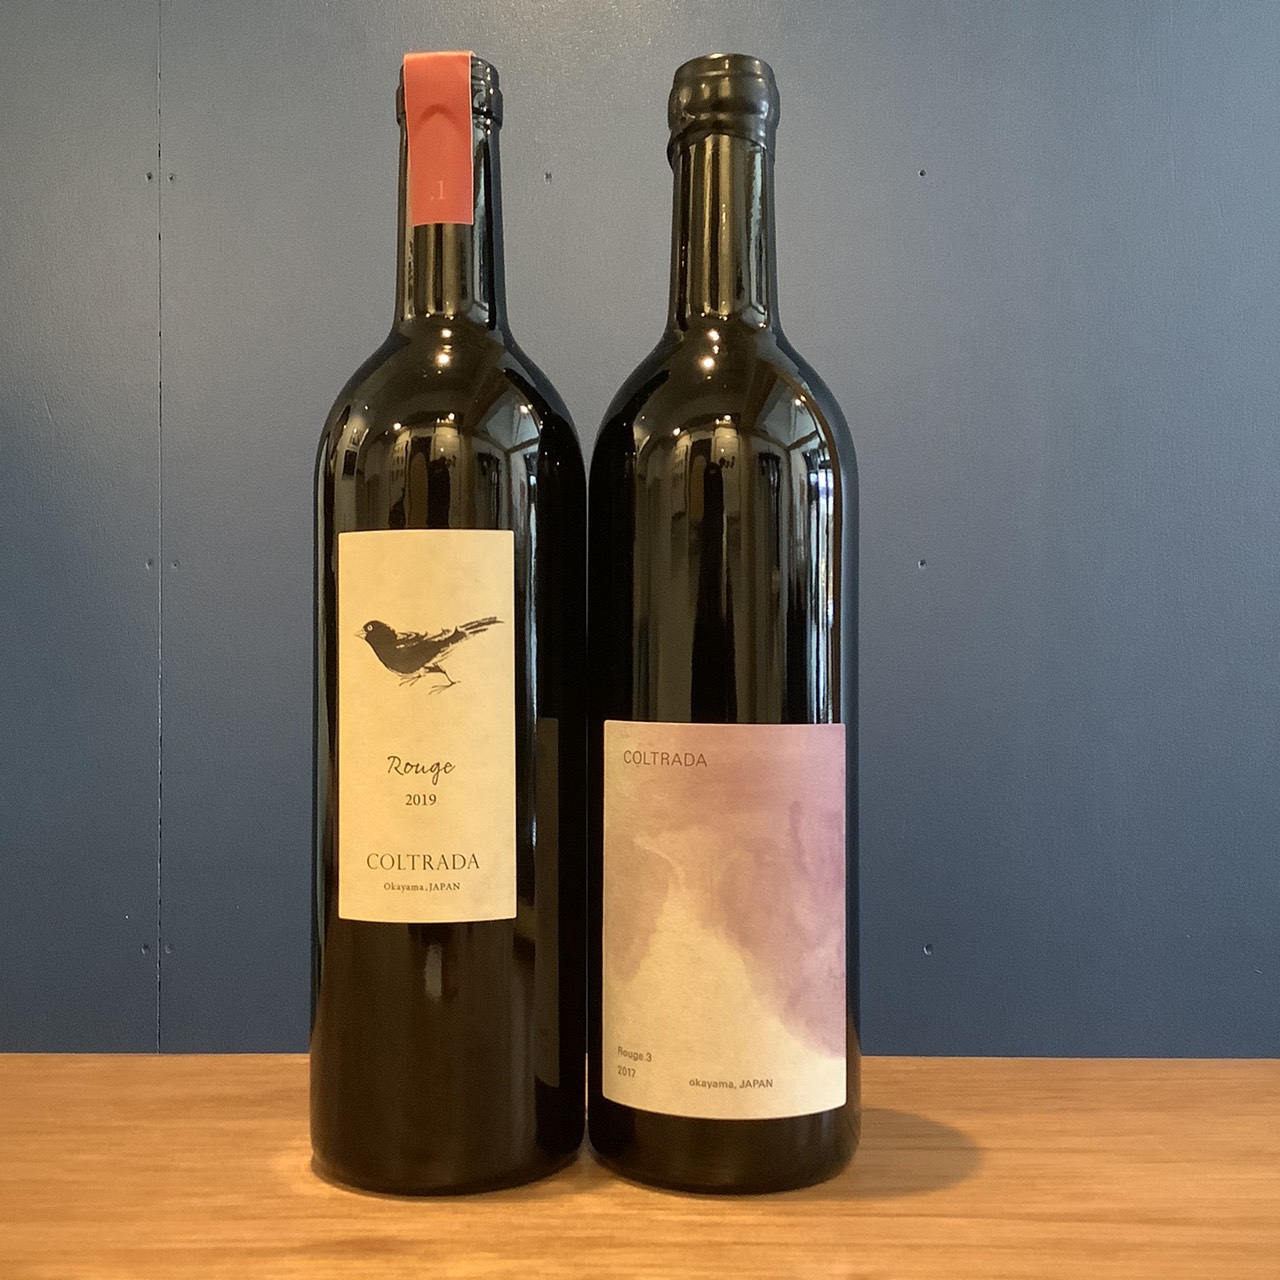 溢れ出るフレッシュなフレーバーと旨味エキス…ワイン界の小籠包や〜〜〜な、岡山の赤ワインをご紹介！